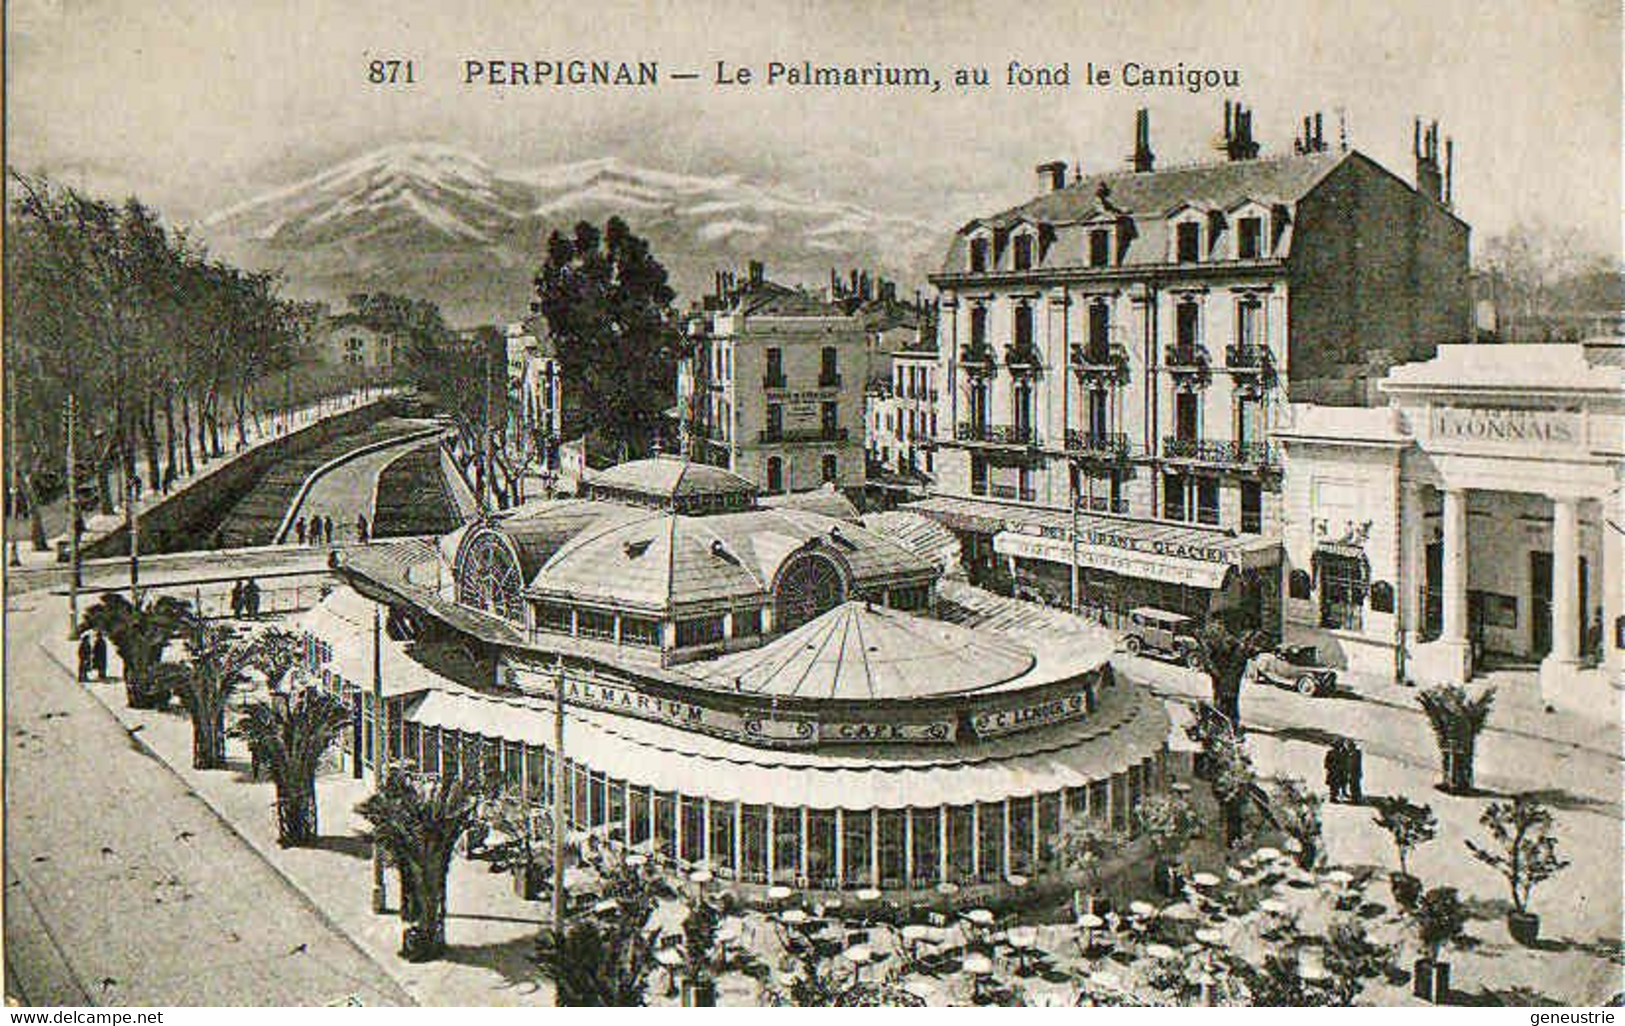 Jeton De Nécessité De Café Restaurant Perpignan Années 30 "Palmarium" Emergency Token - Monétaires / De Nécessité